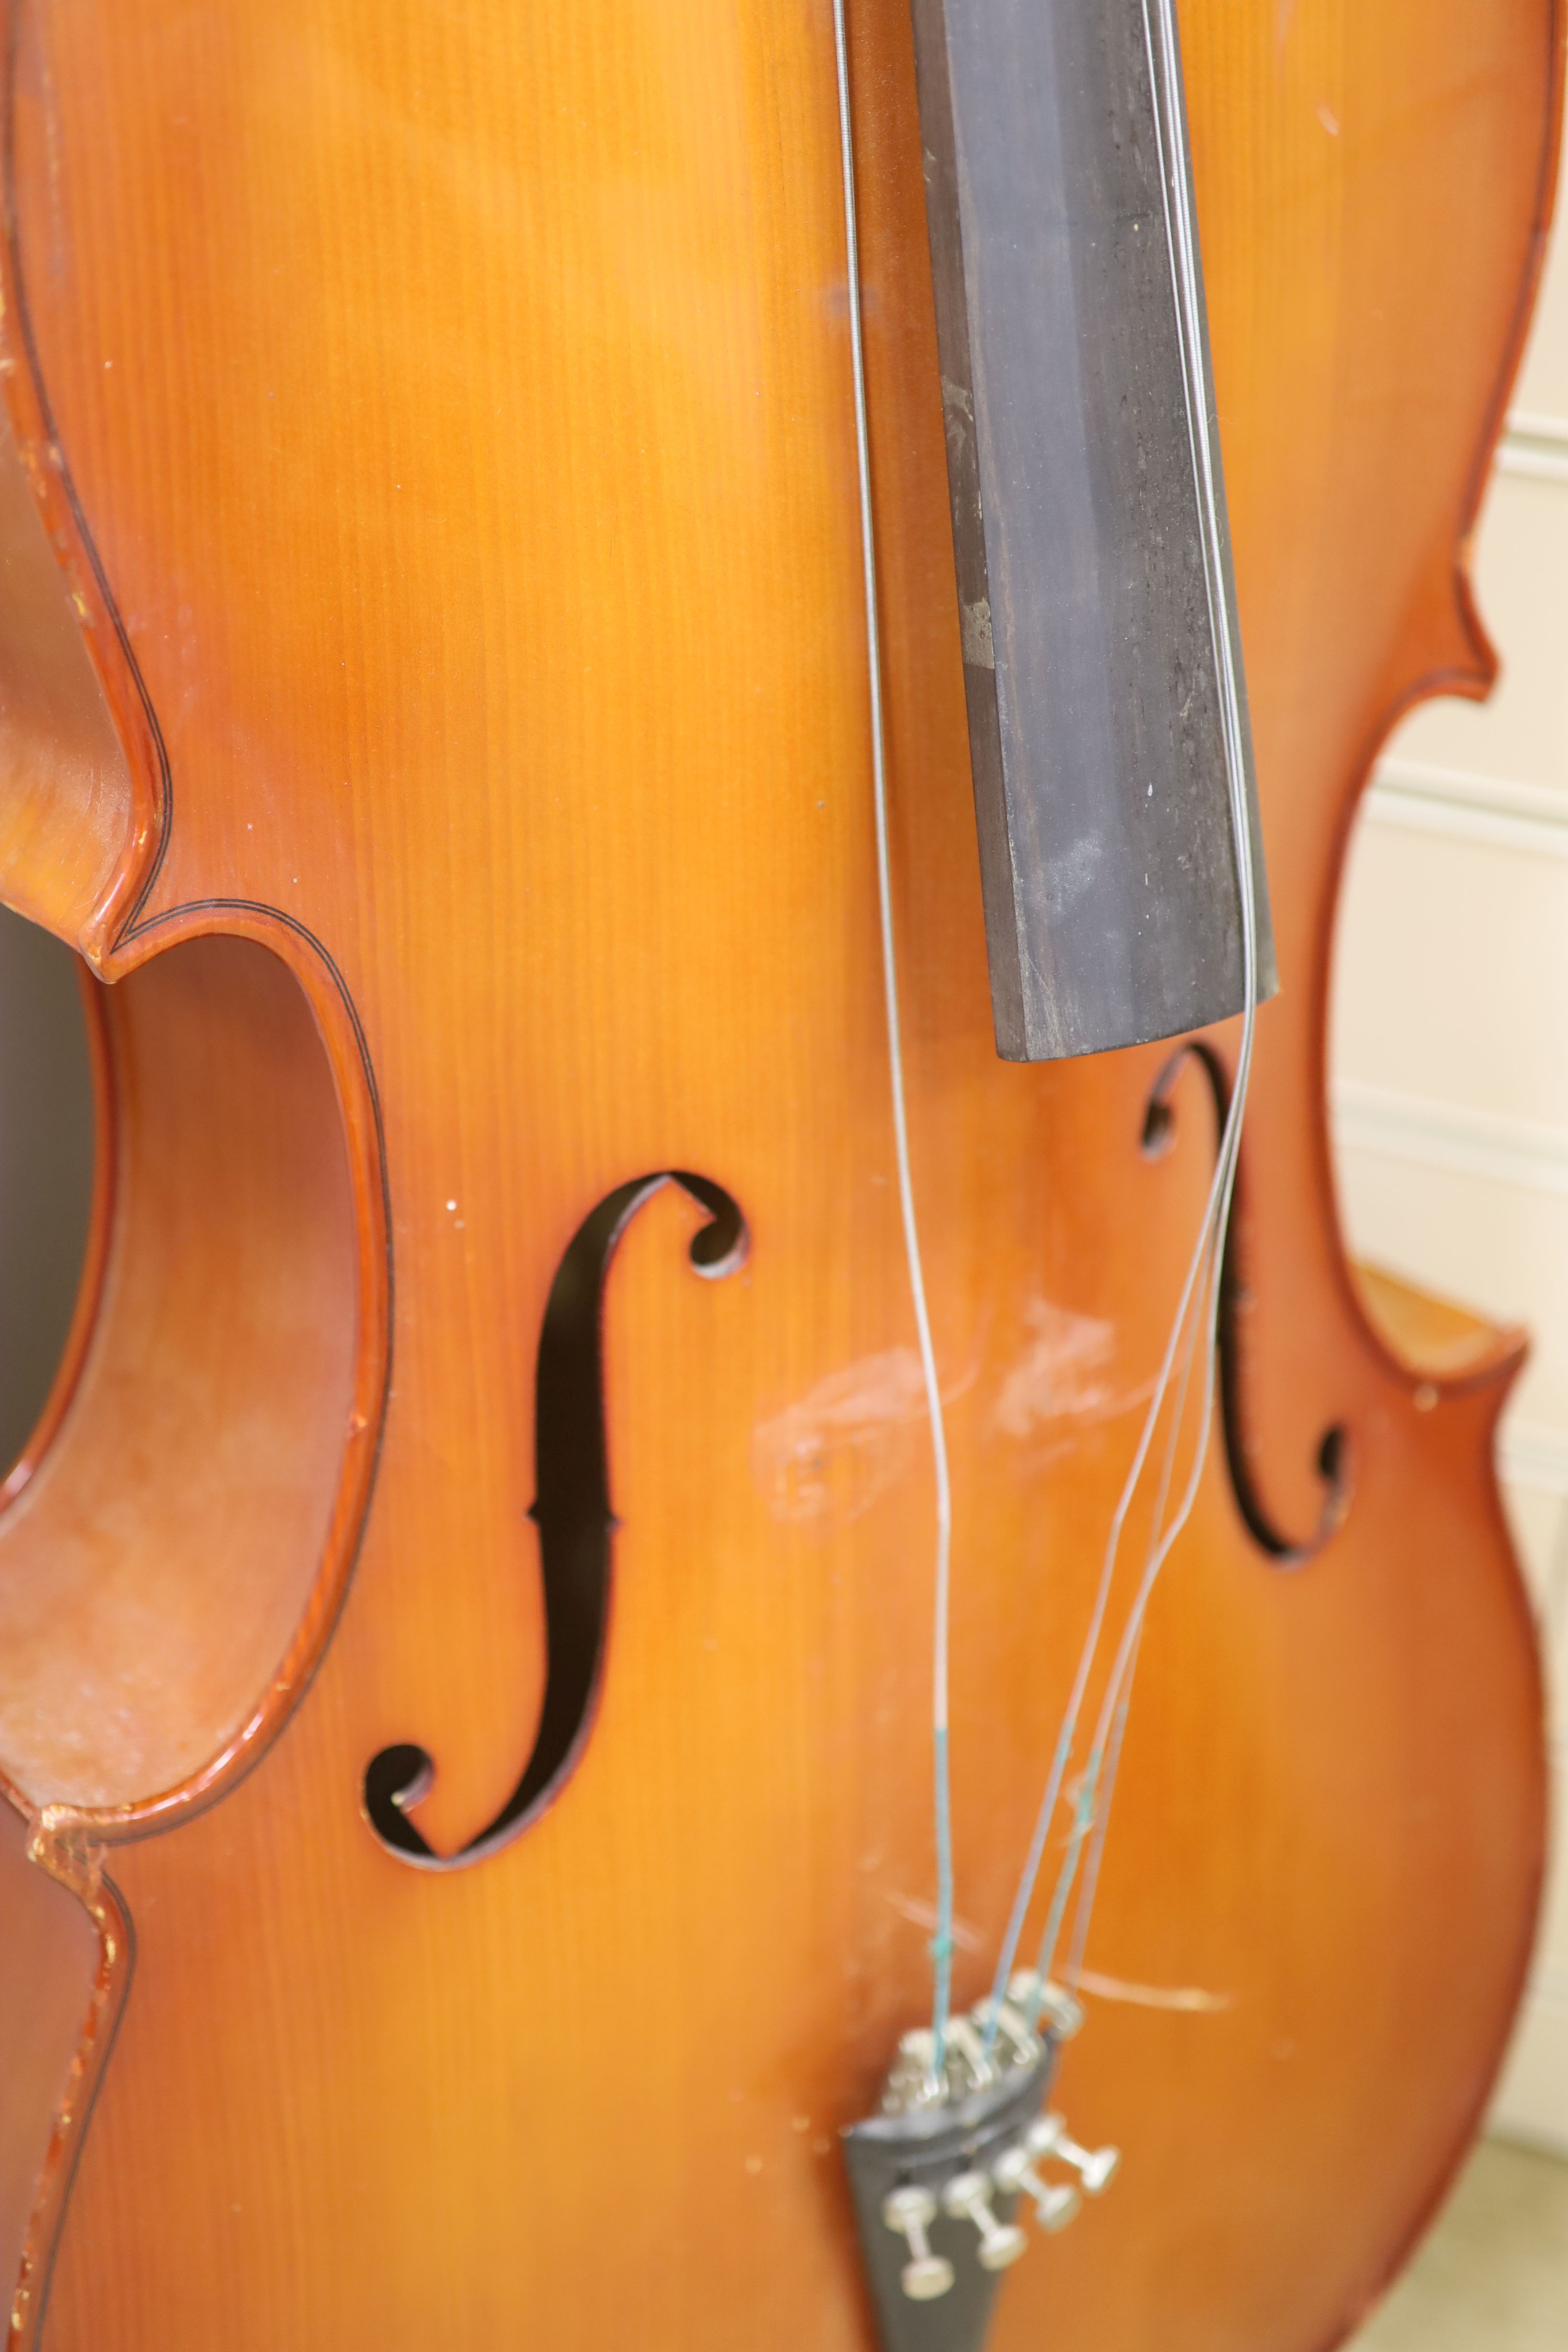 A cello, height 134cm